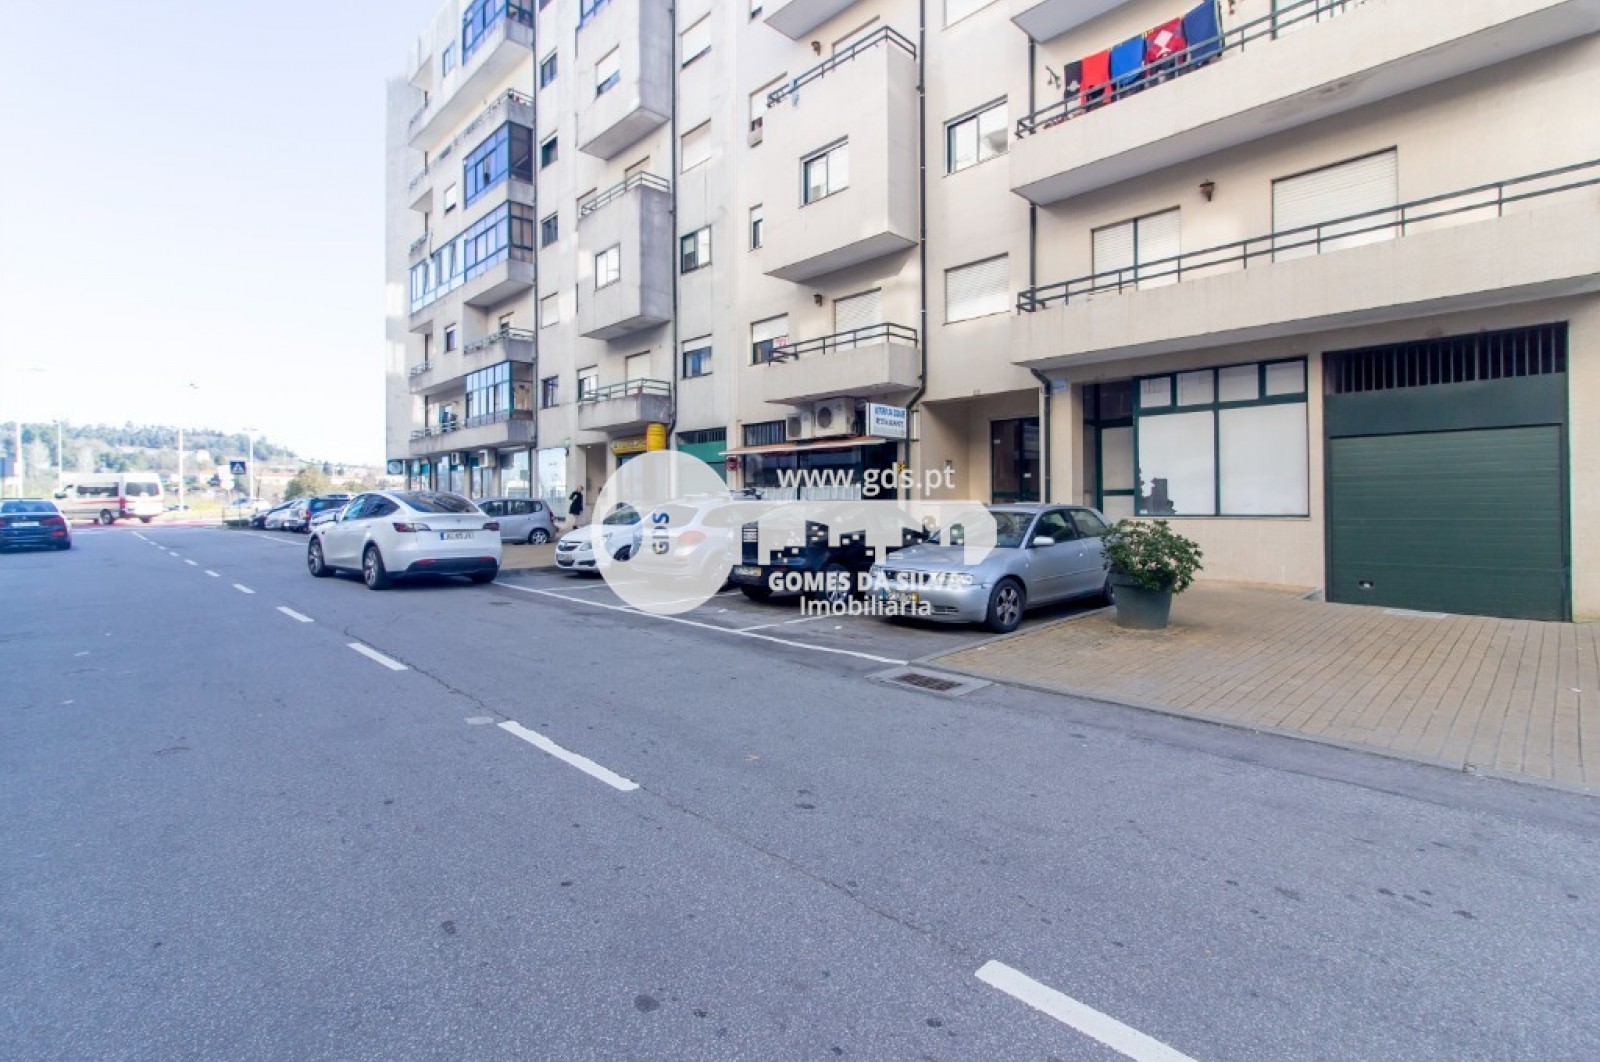 Garagem para Venda em São Vicente, Braga, Braga - Imagem 19